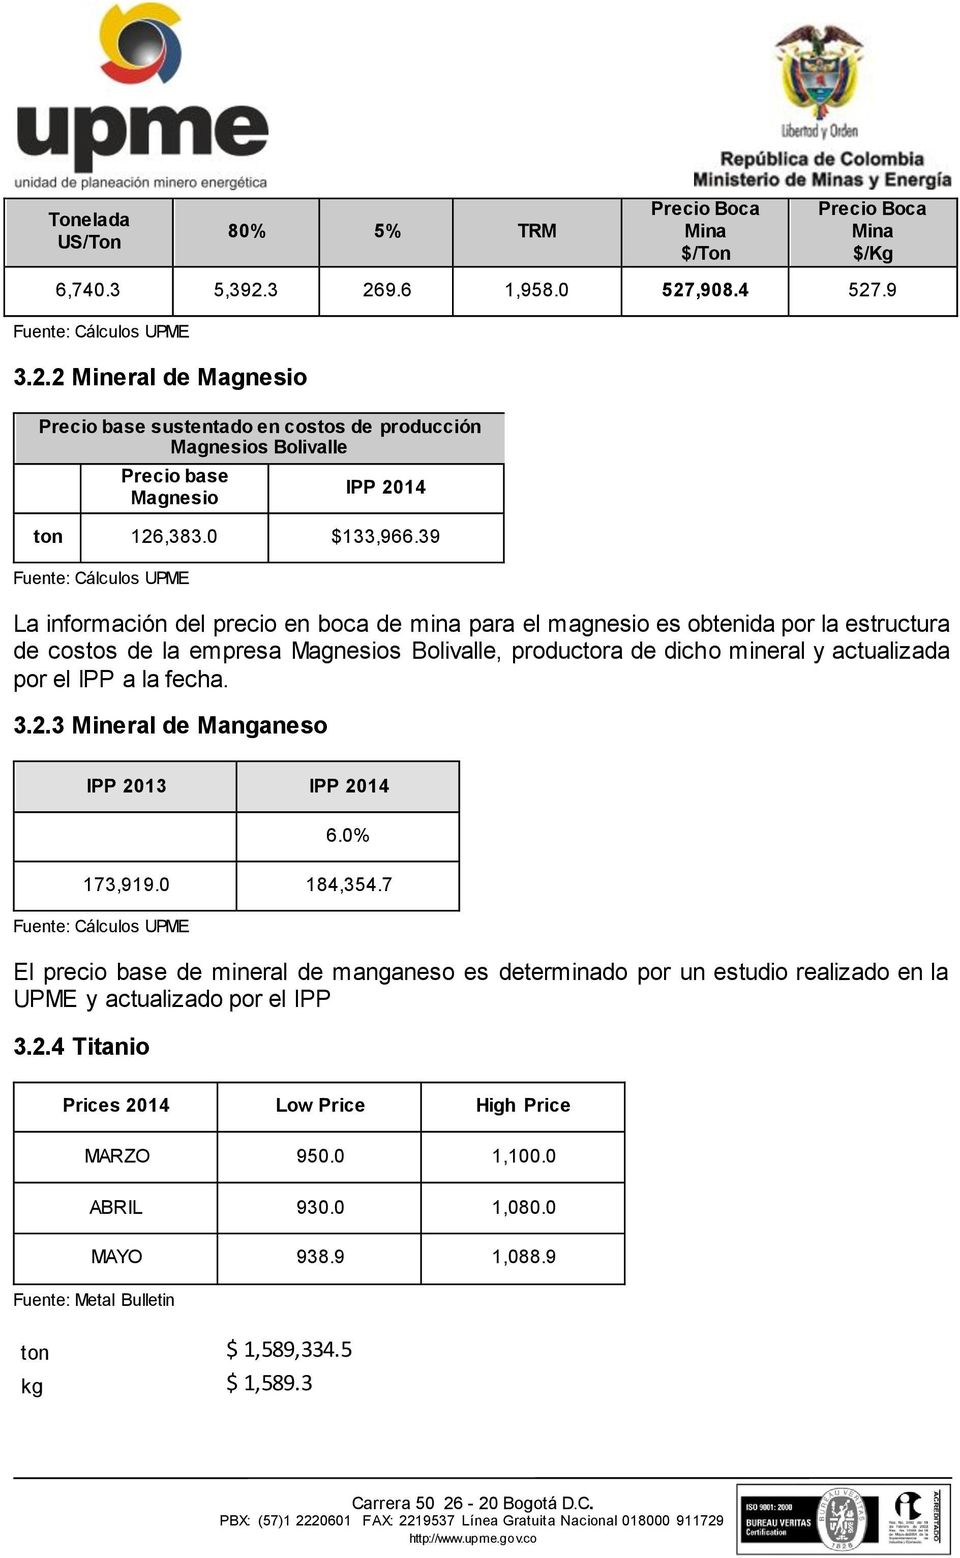 39 La información del precio en boca de mina para el magnesio es obtenida por la estructura de costos de la empresa Magnesios Bolivalle, productora de dicho mineral y